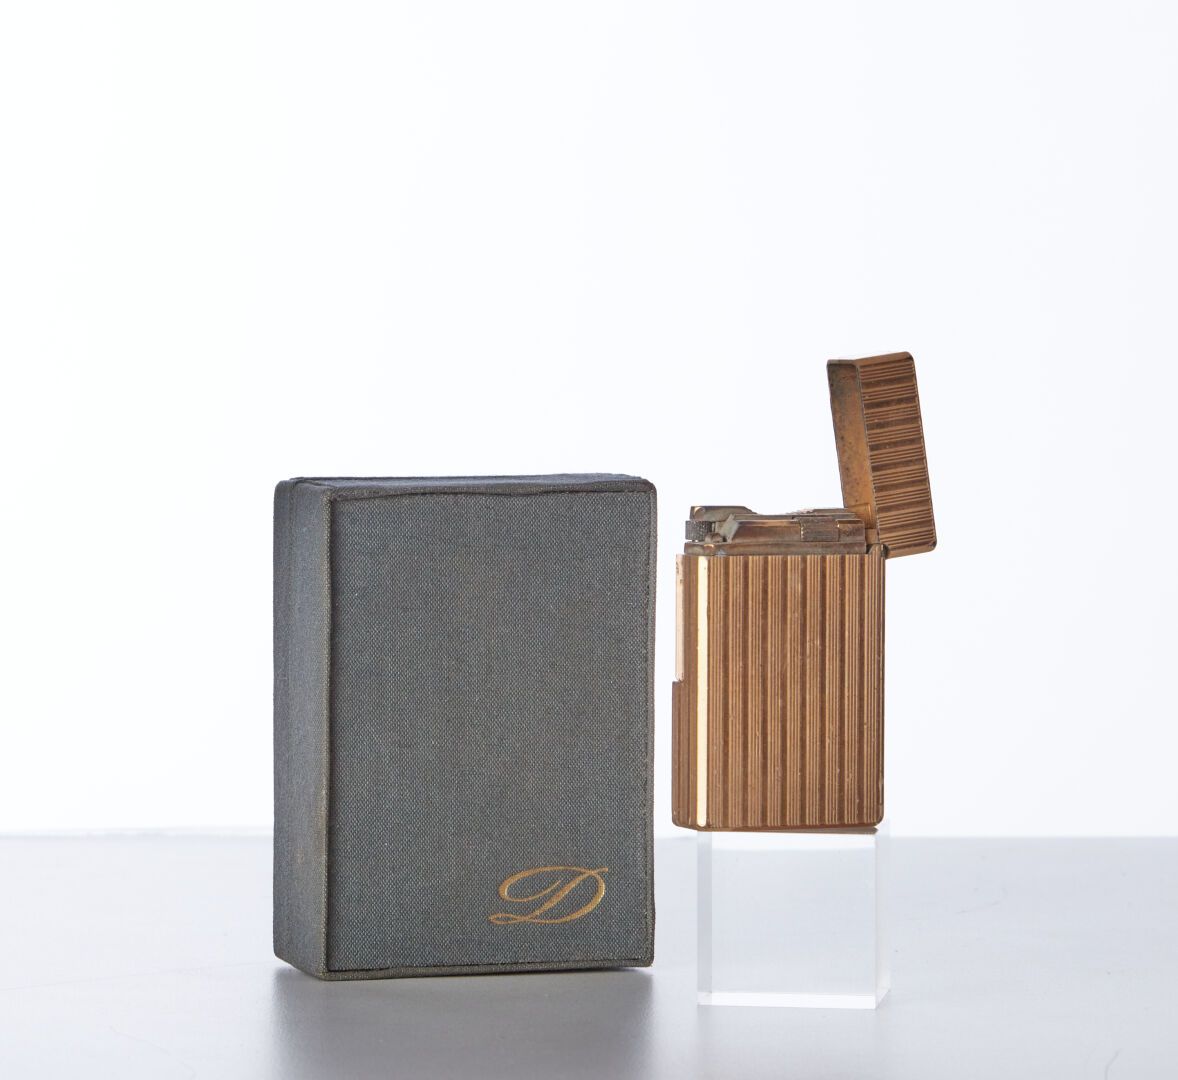 Null DUPONT

Un encendedor de metal dorado en su caja original